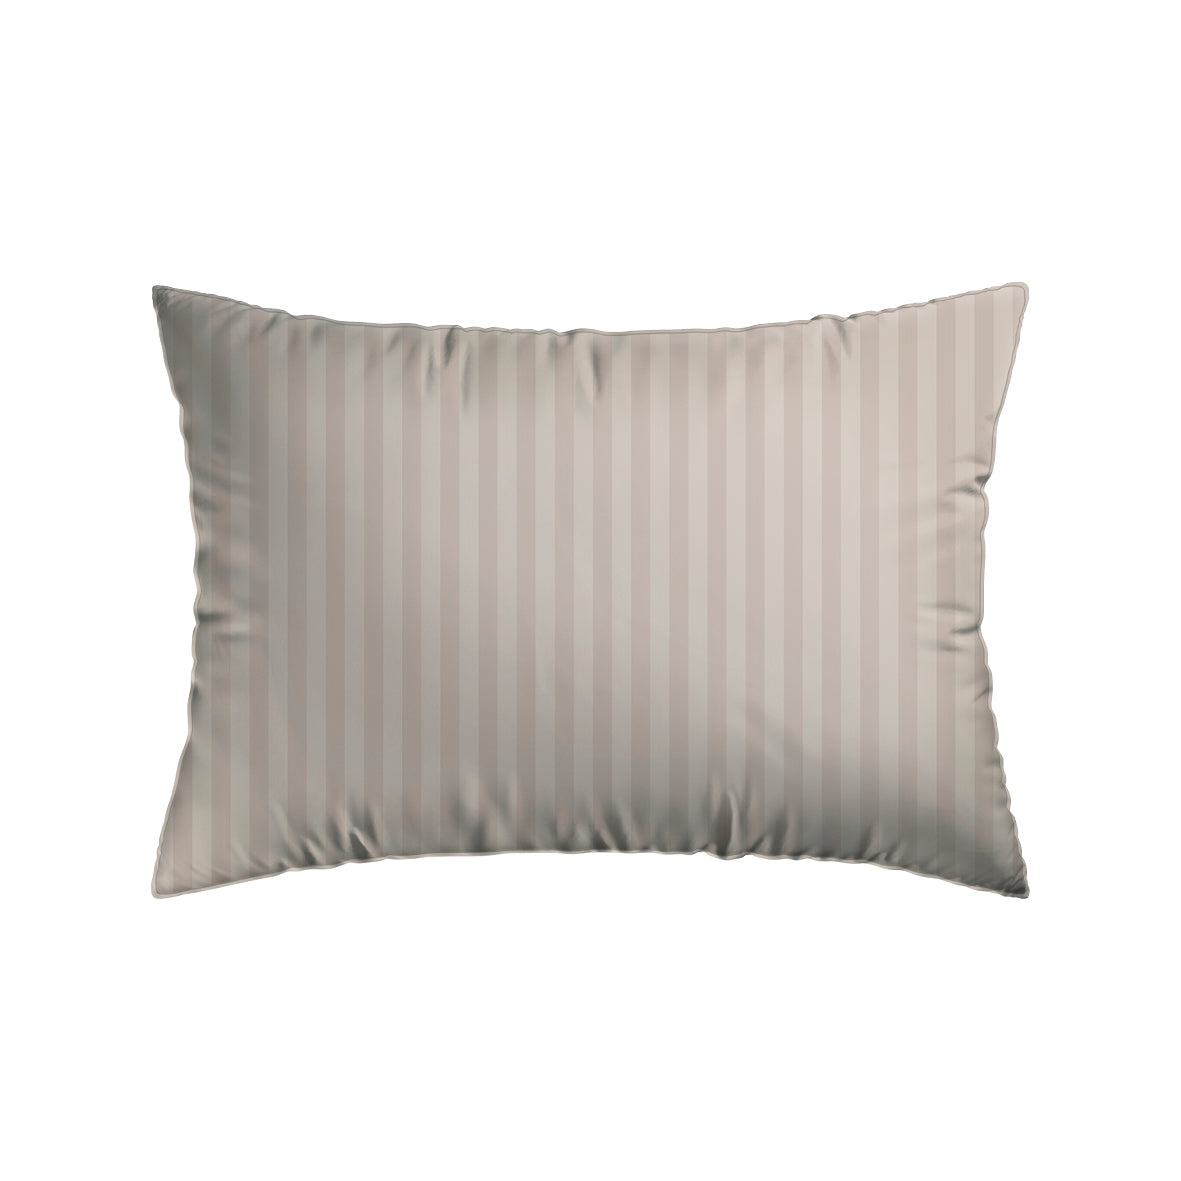 Pillowcase(s) cotton satin dobby stripe woven Taupe